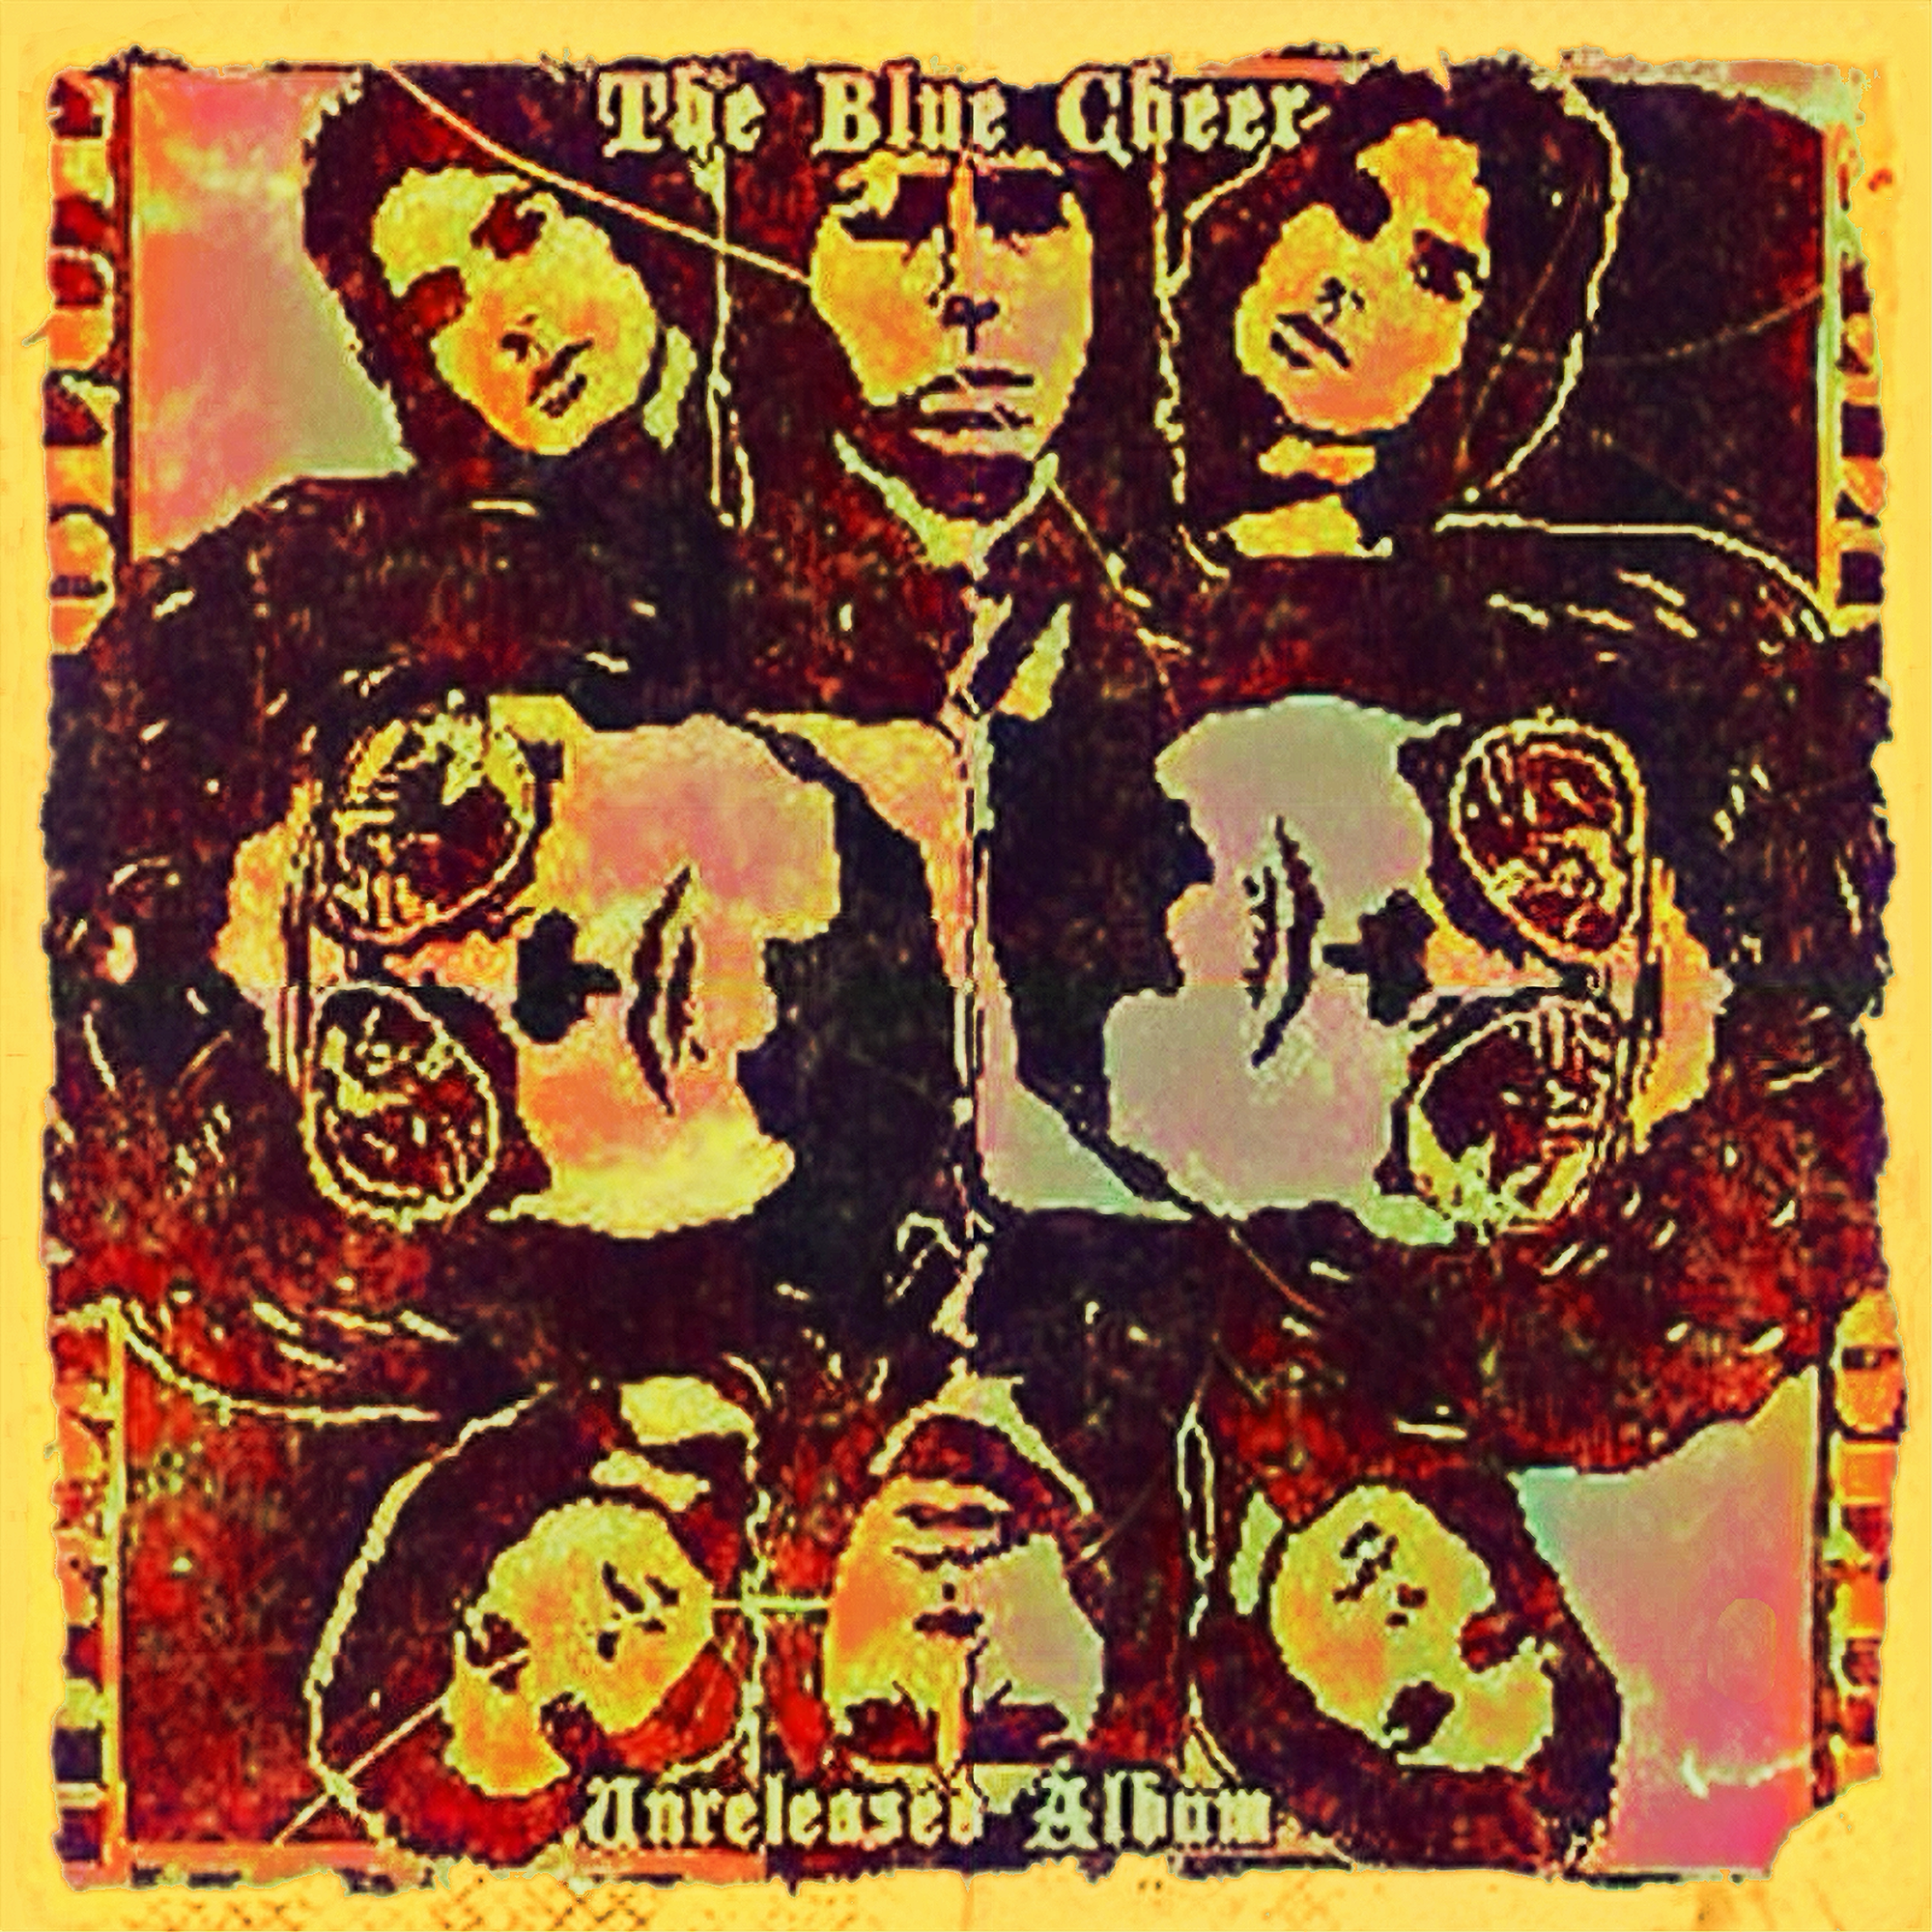 BlueCheer1979UnreleasedAlbum (1).png